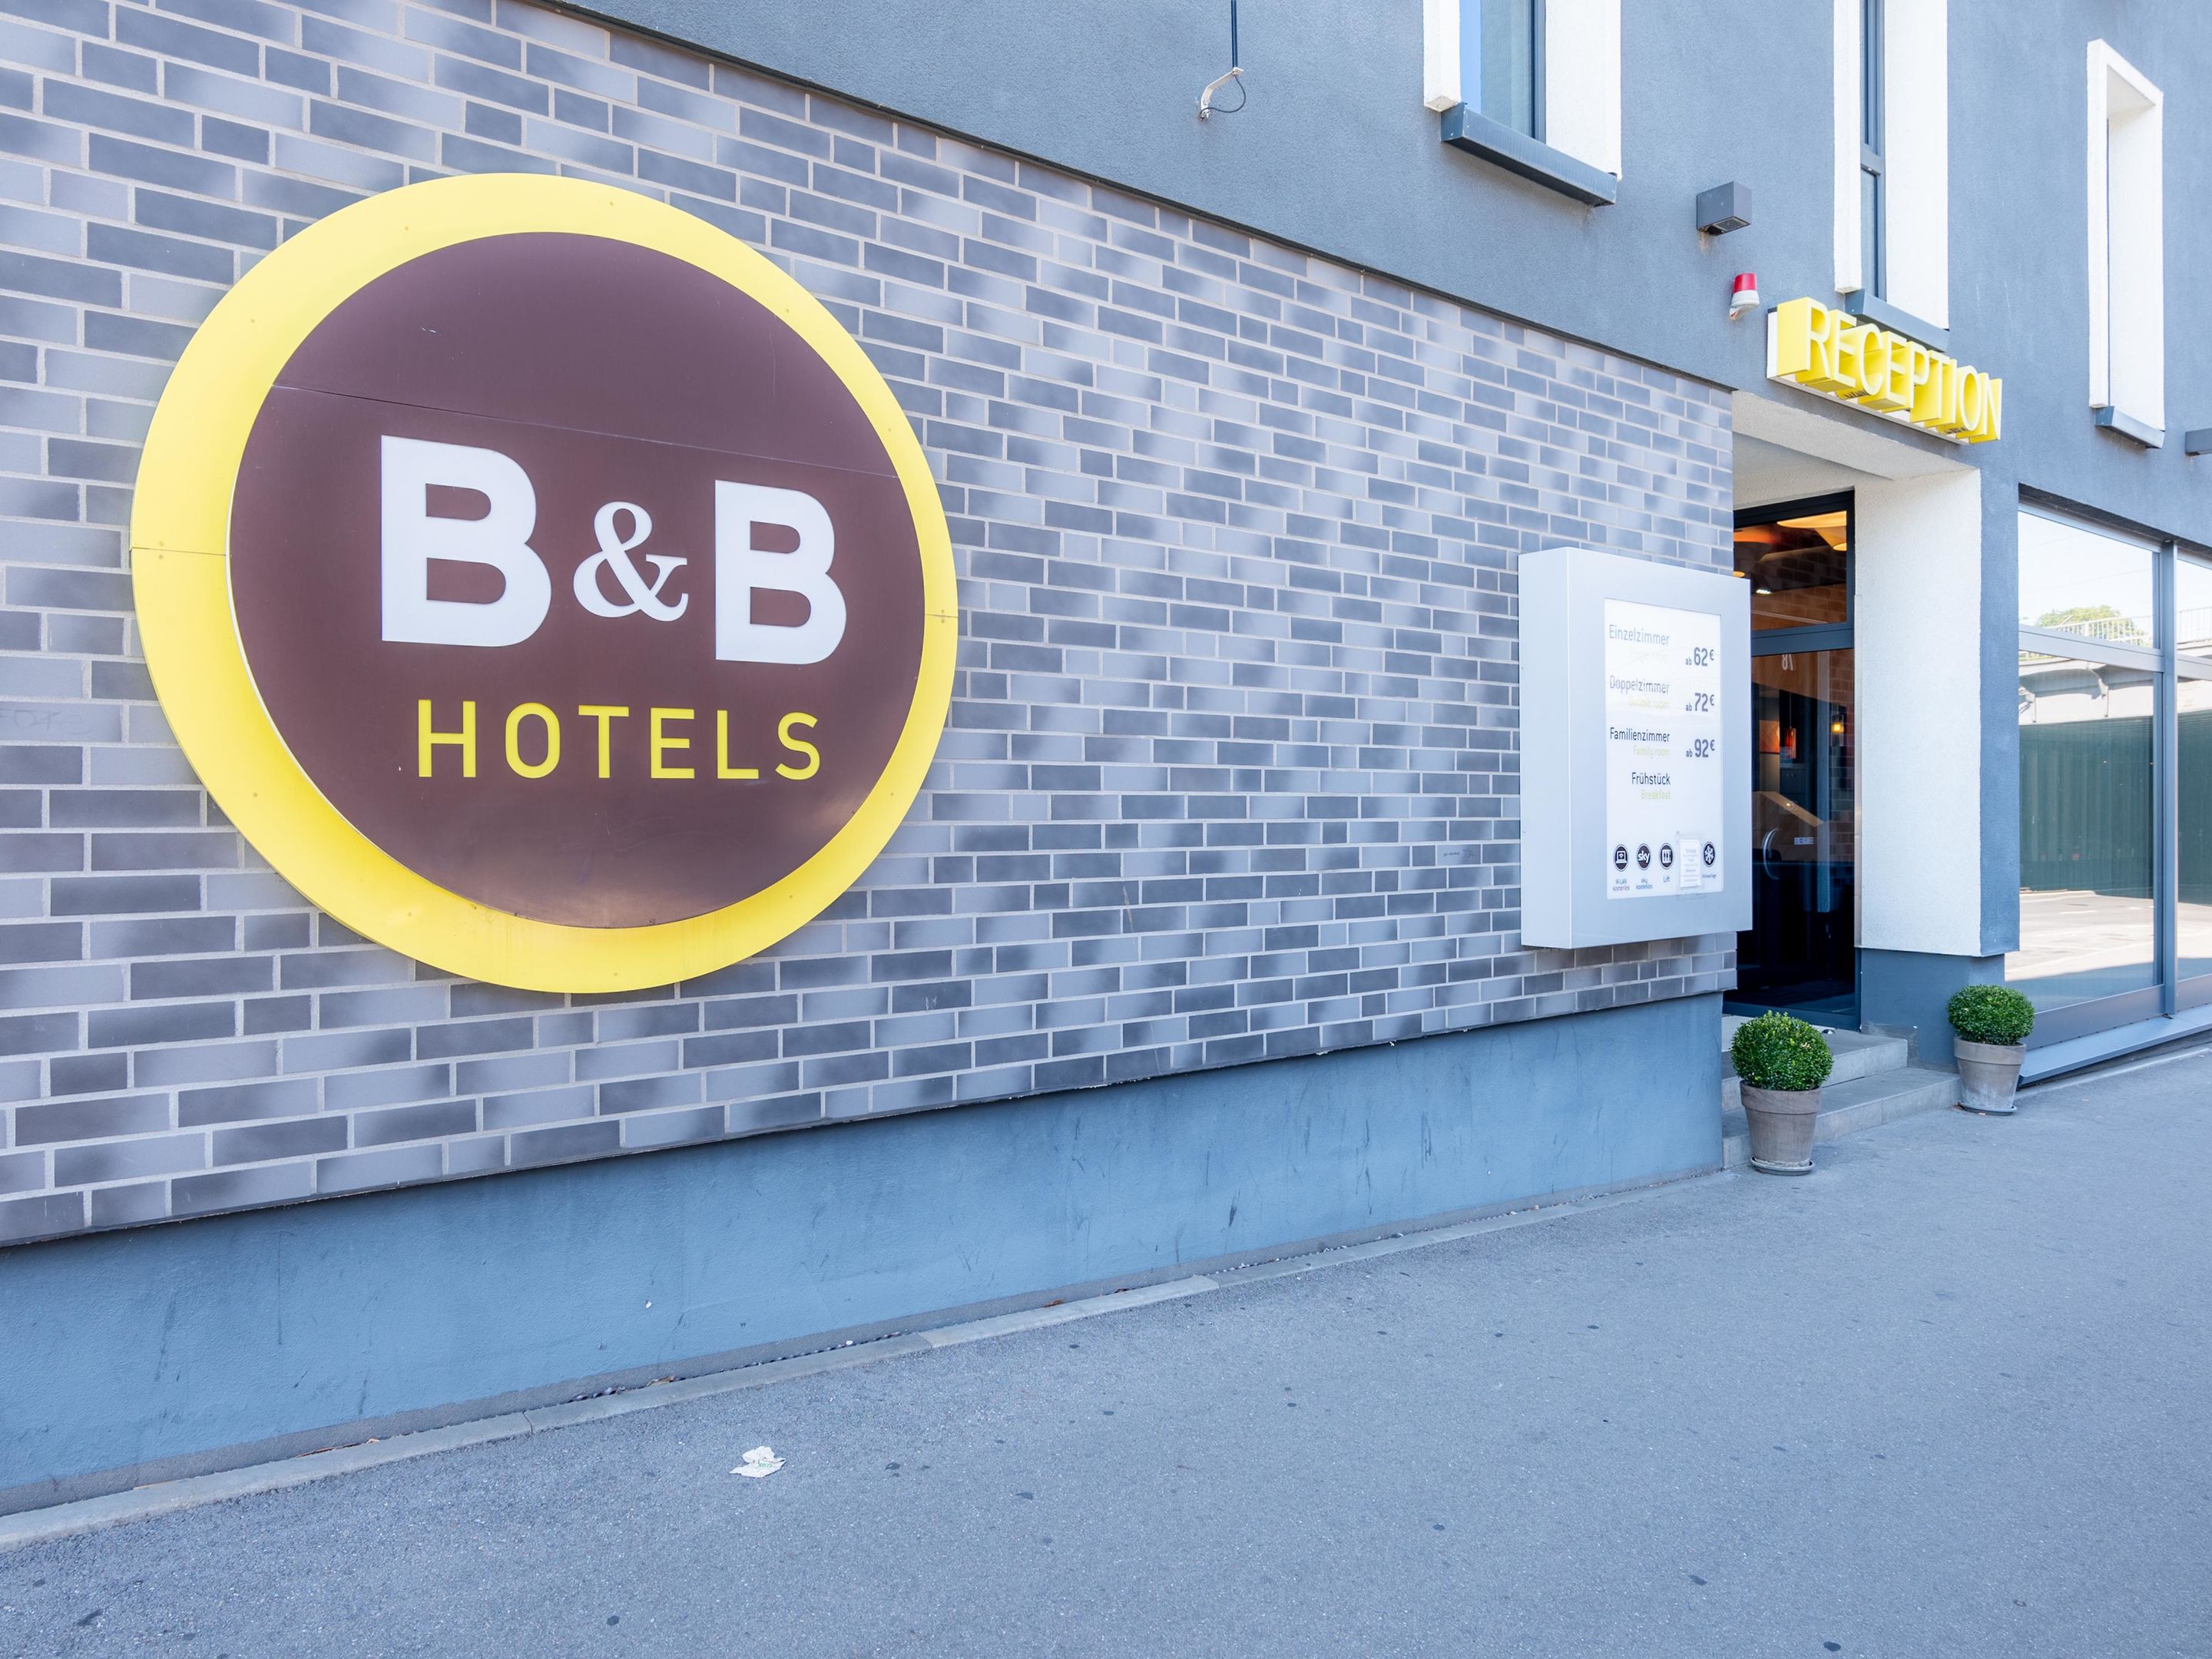 B&B HOTEL Stuttgart-Bad Cannstatt, König-Karl-Straße 78 in Stuttgart